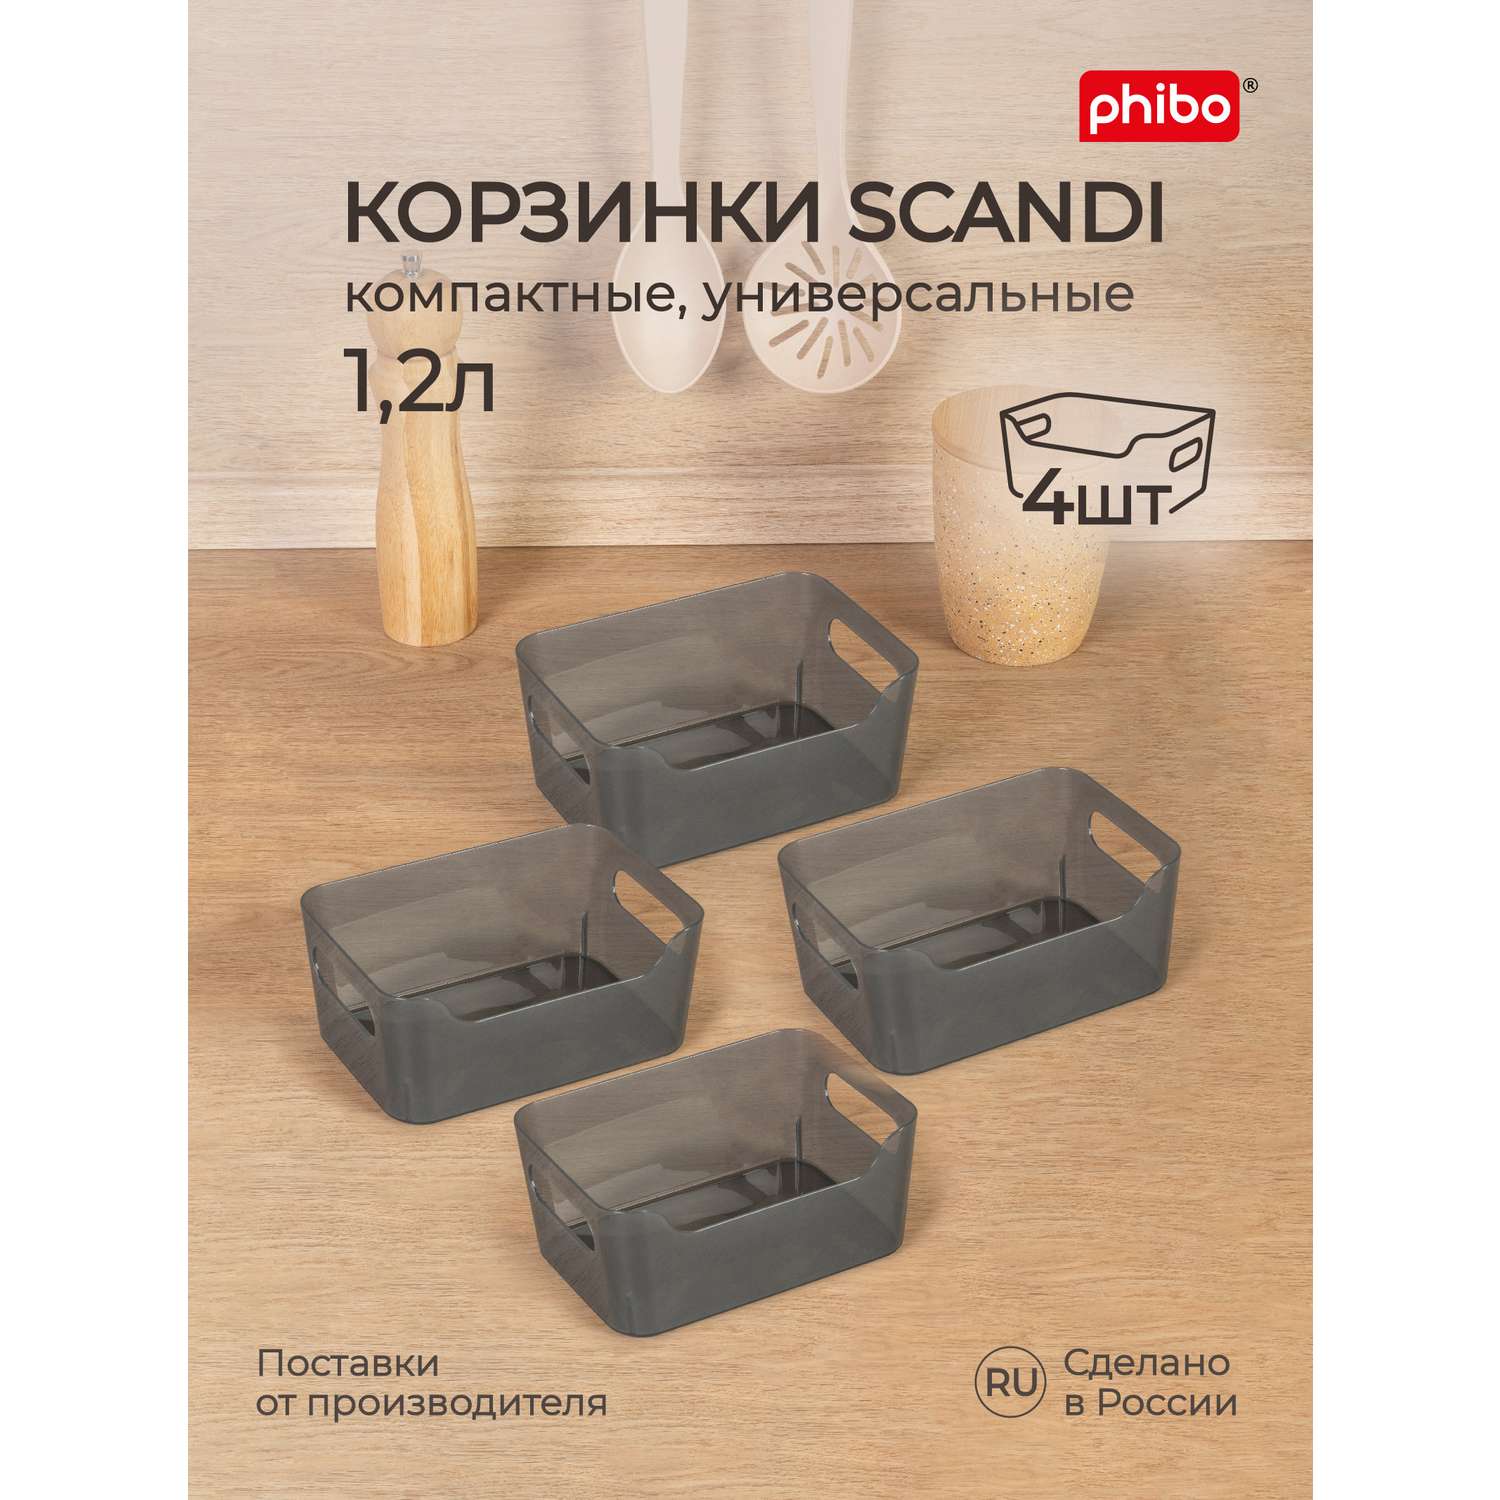 Комплект корзинок Phibo универсальных Scandi 170x120x75 мм 1.2л 4шт черный - фото 1